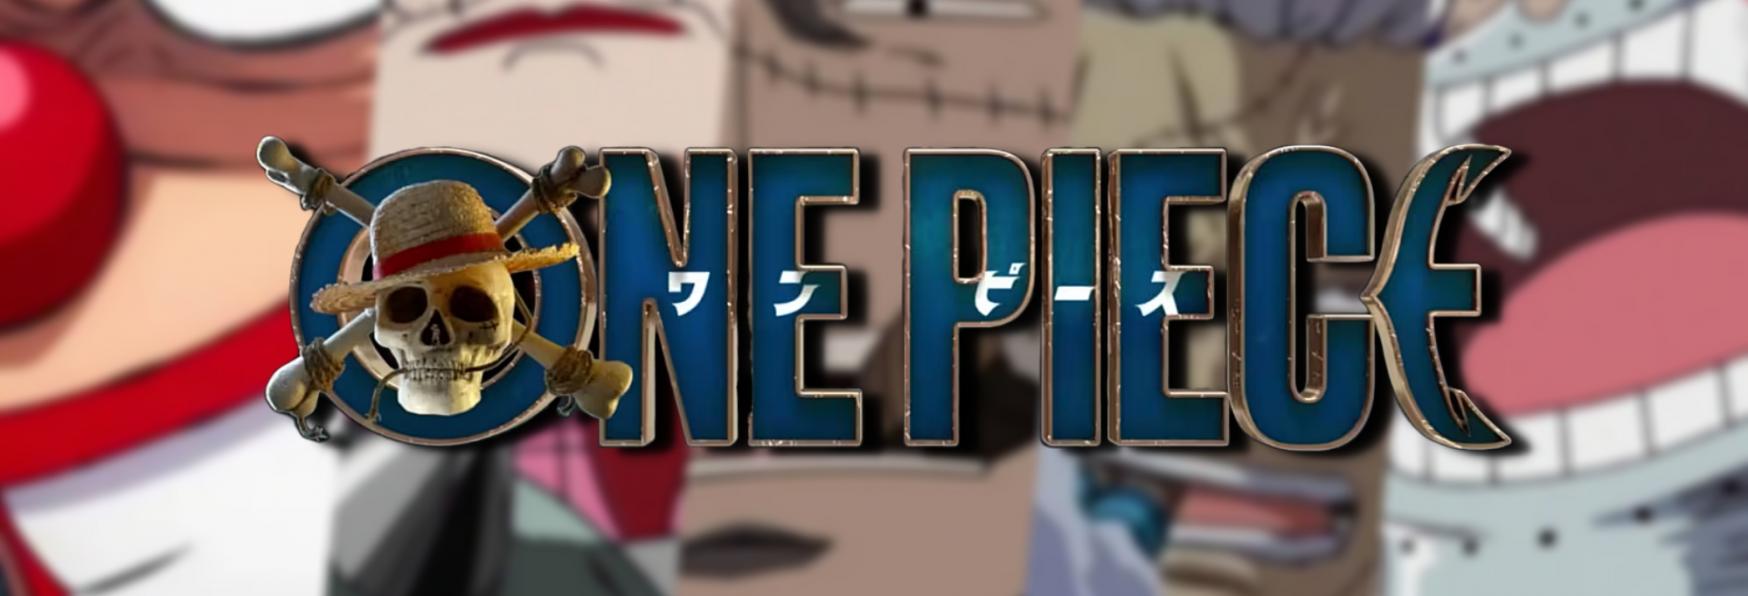 One Piece 2: Quali Villain potremmo vedere nella Prossima Stagione?